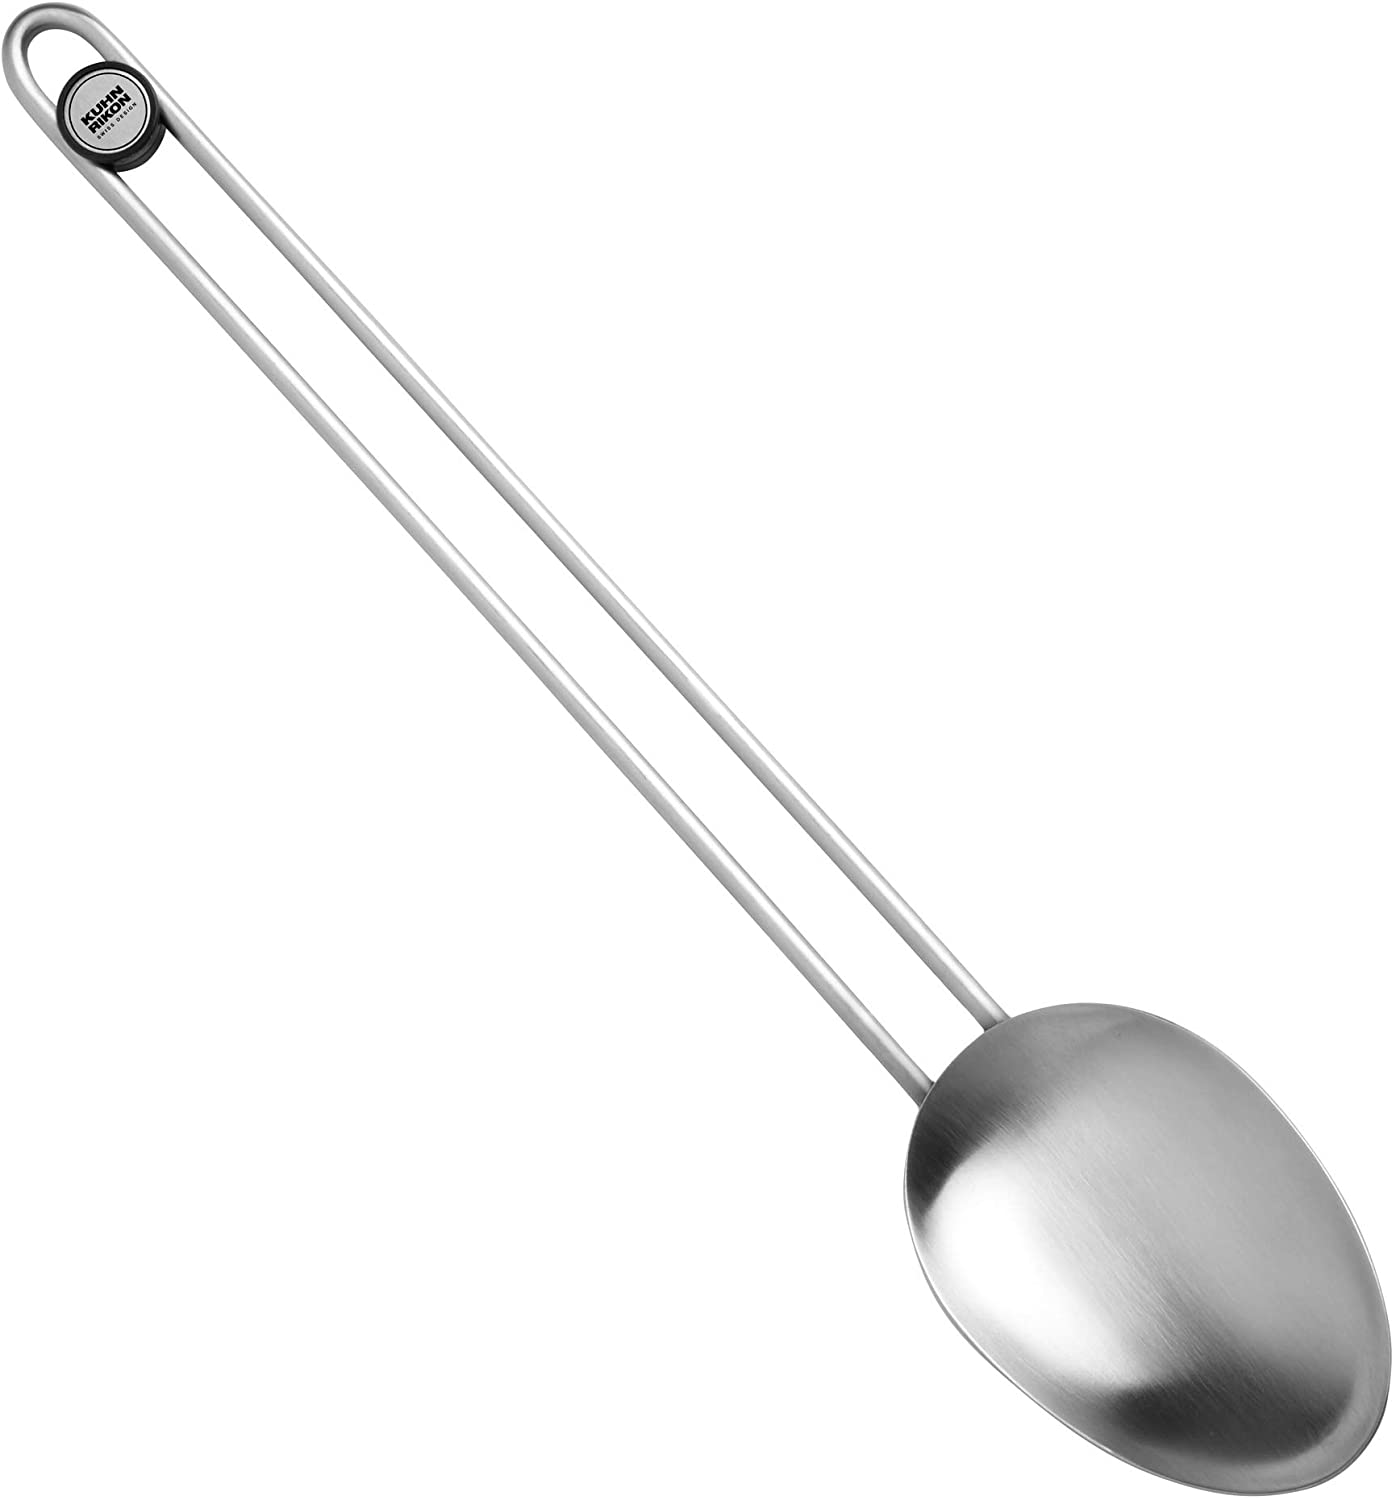 Kuhn Rikon Essential 24106 Serving Spoon Stainless Steel